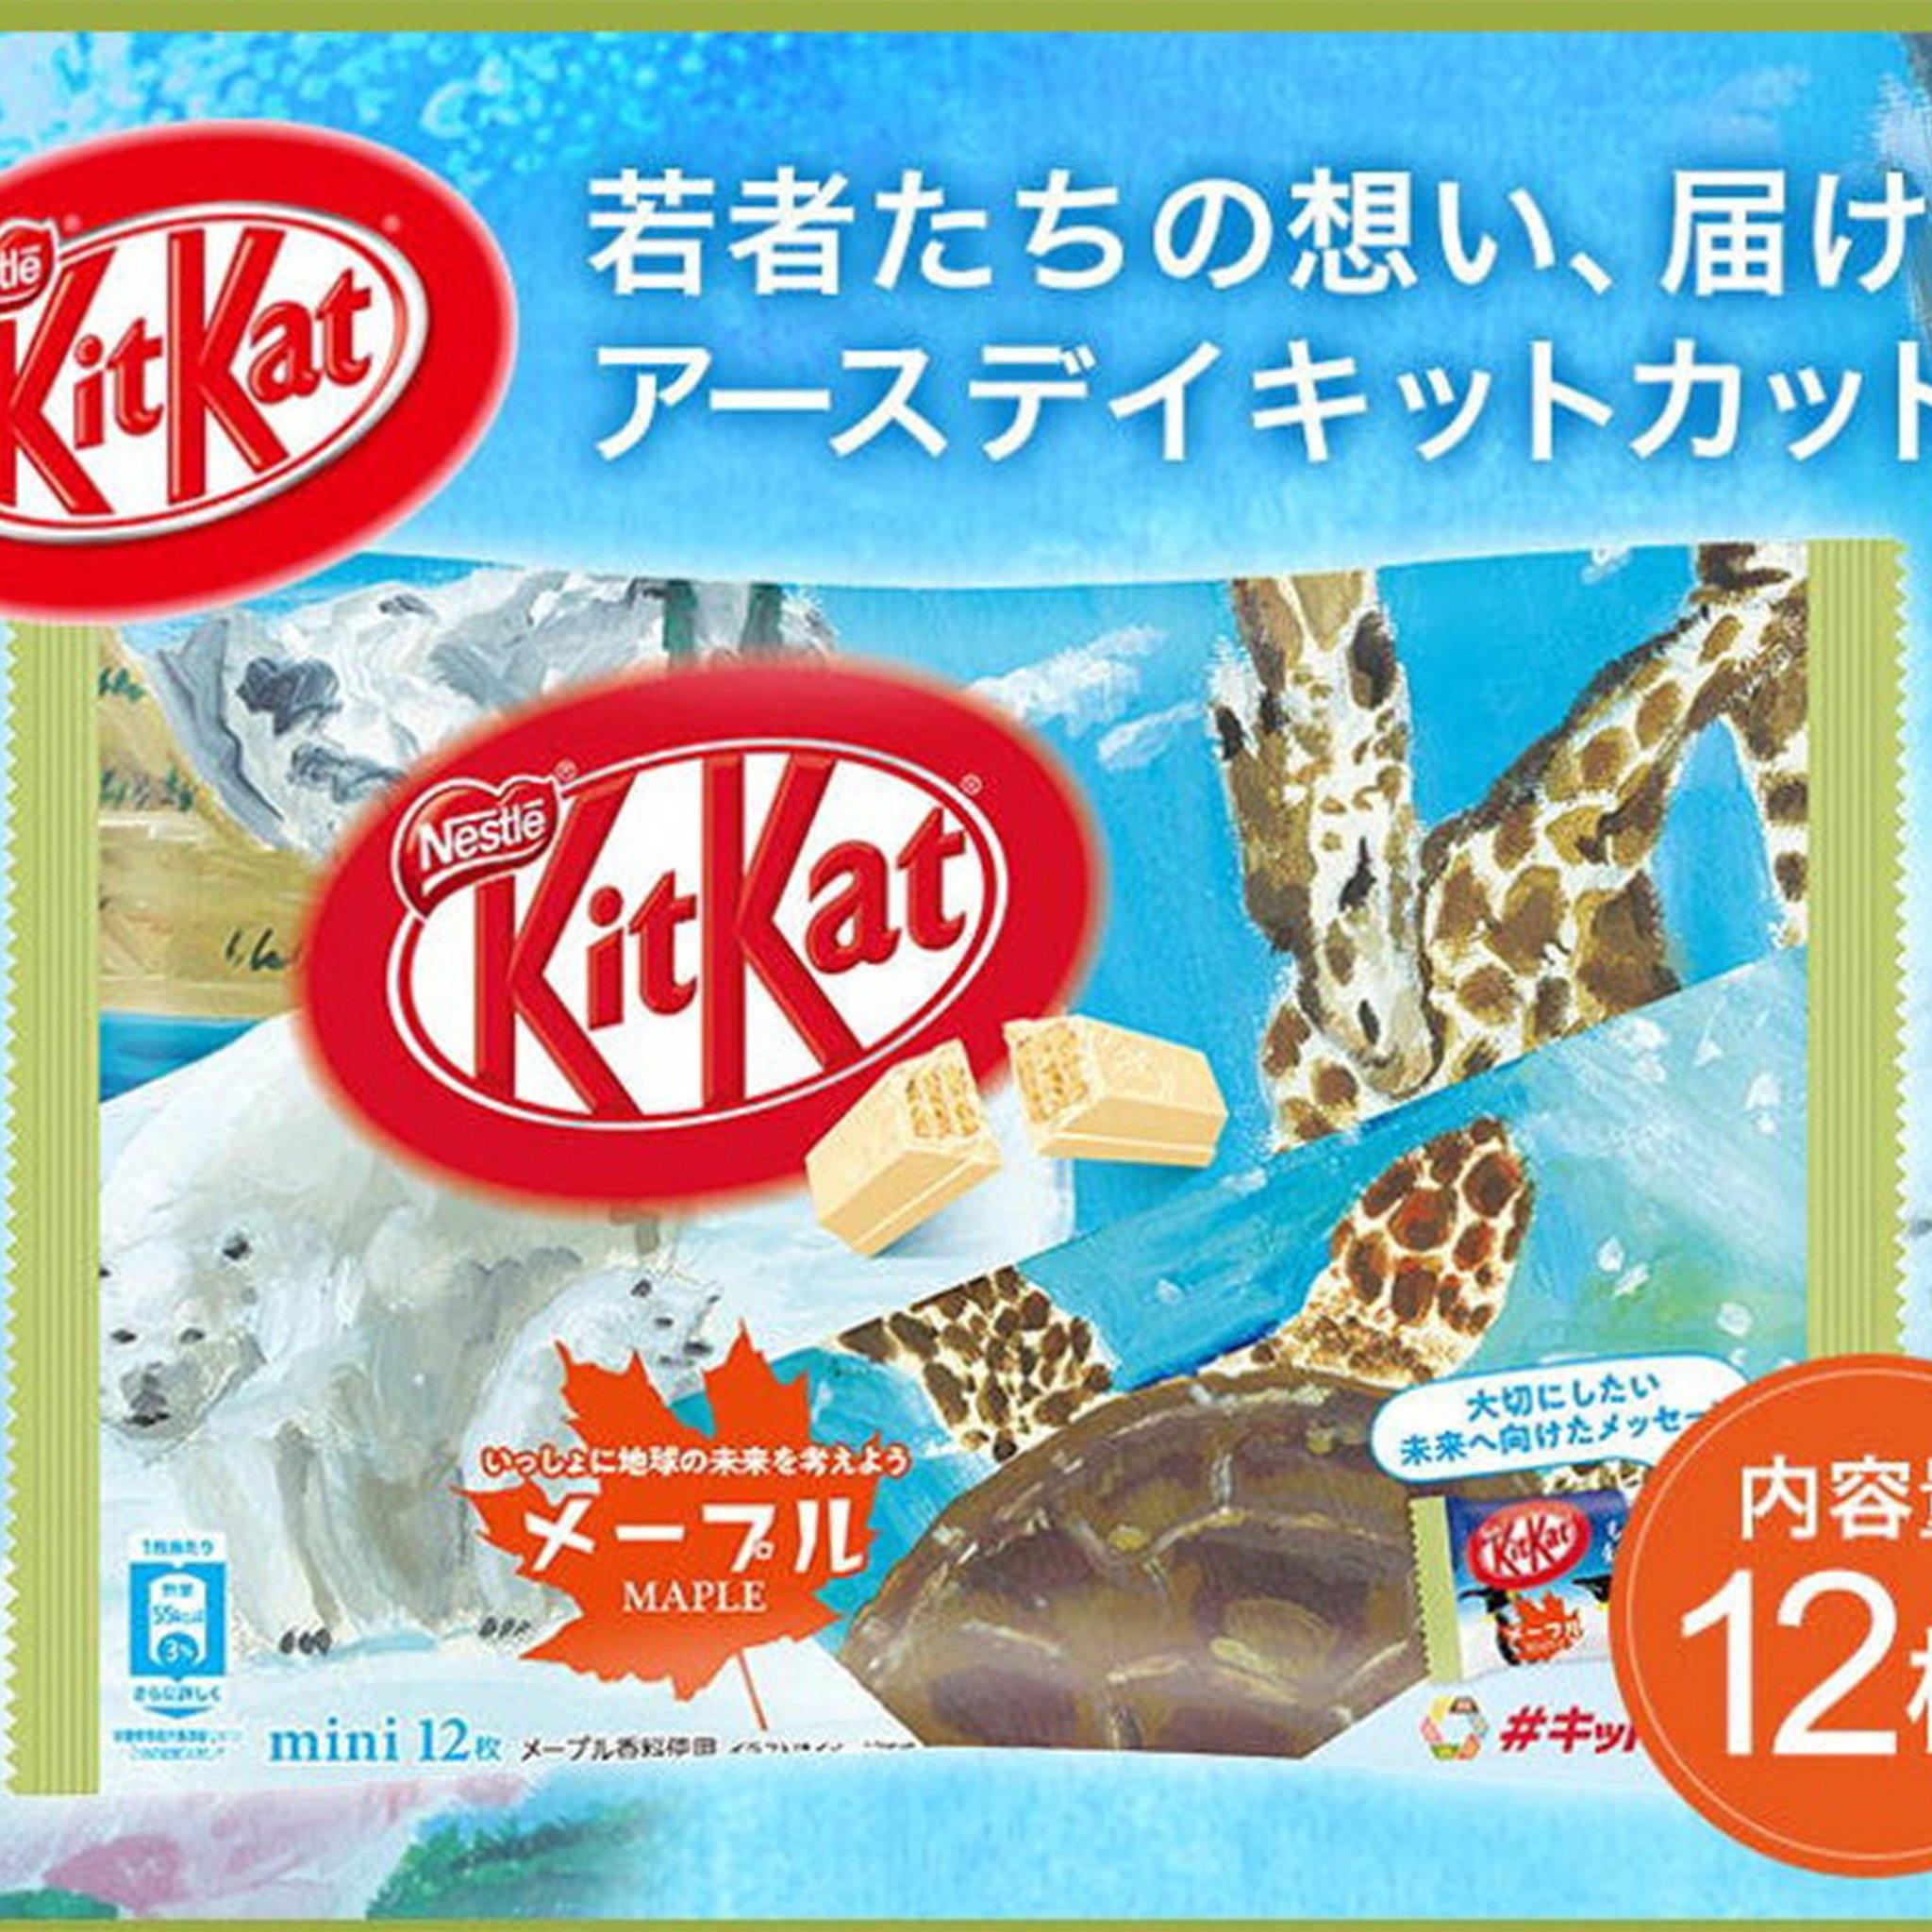 Kit Kat Maple - Japan - Sweet Exotics